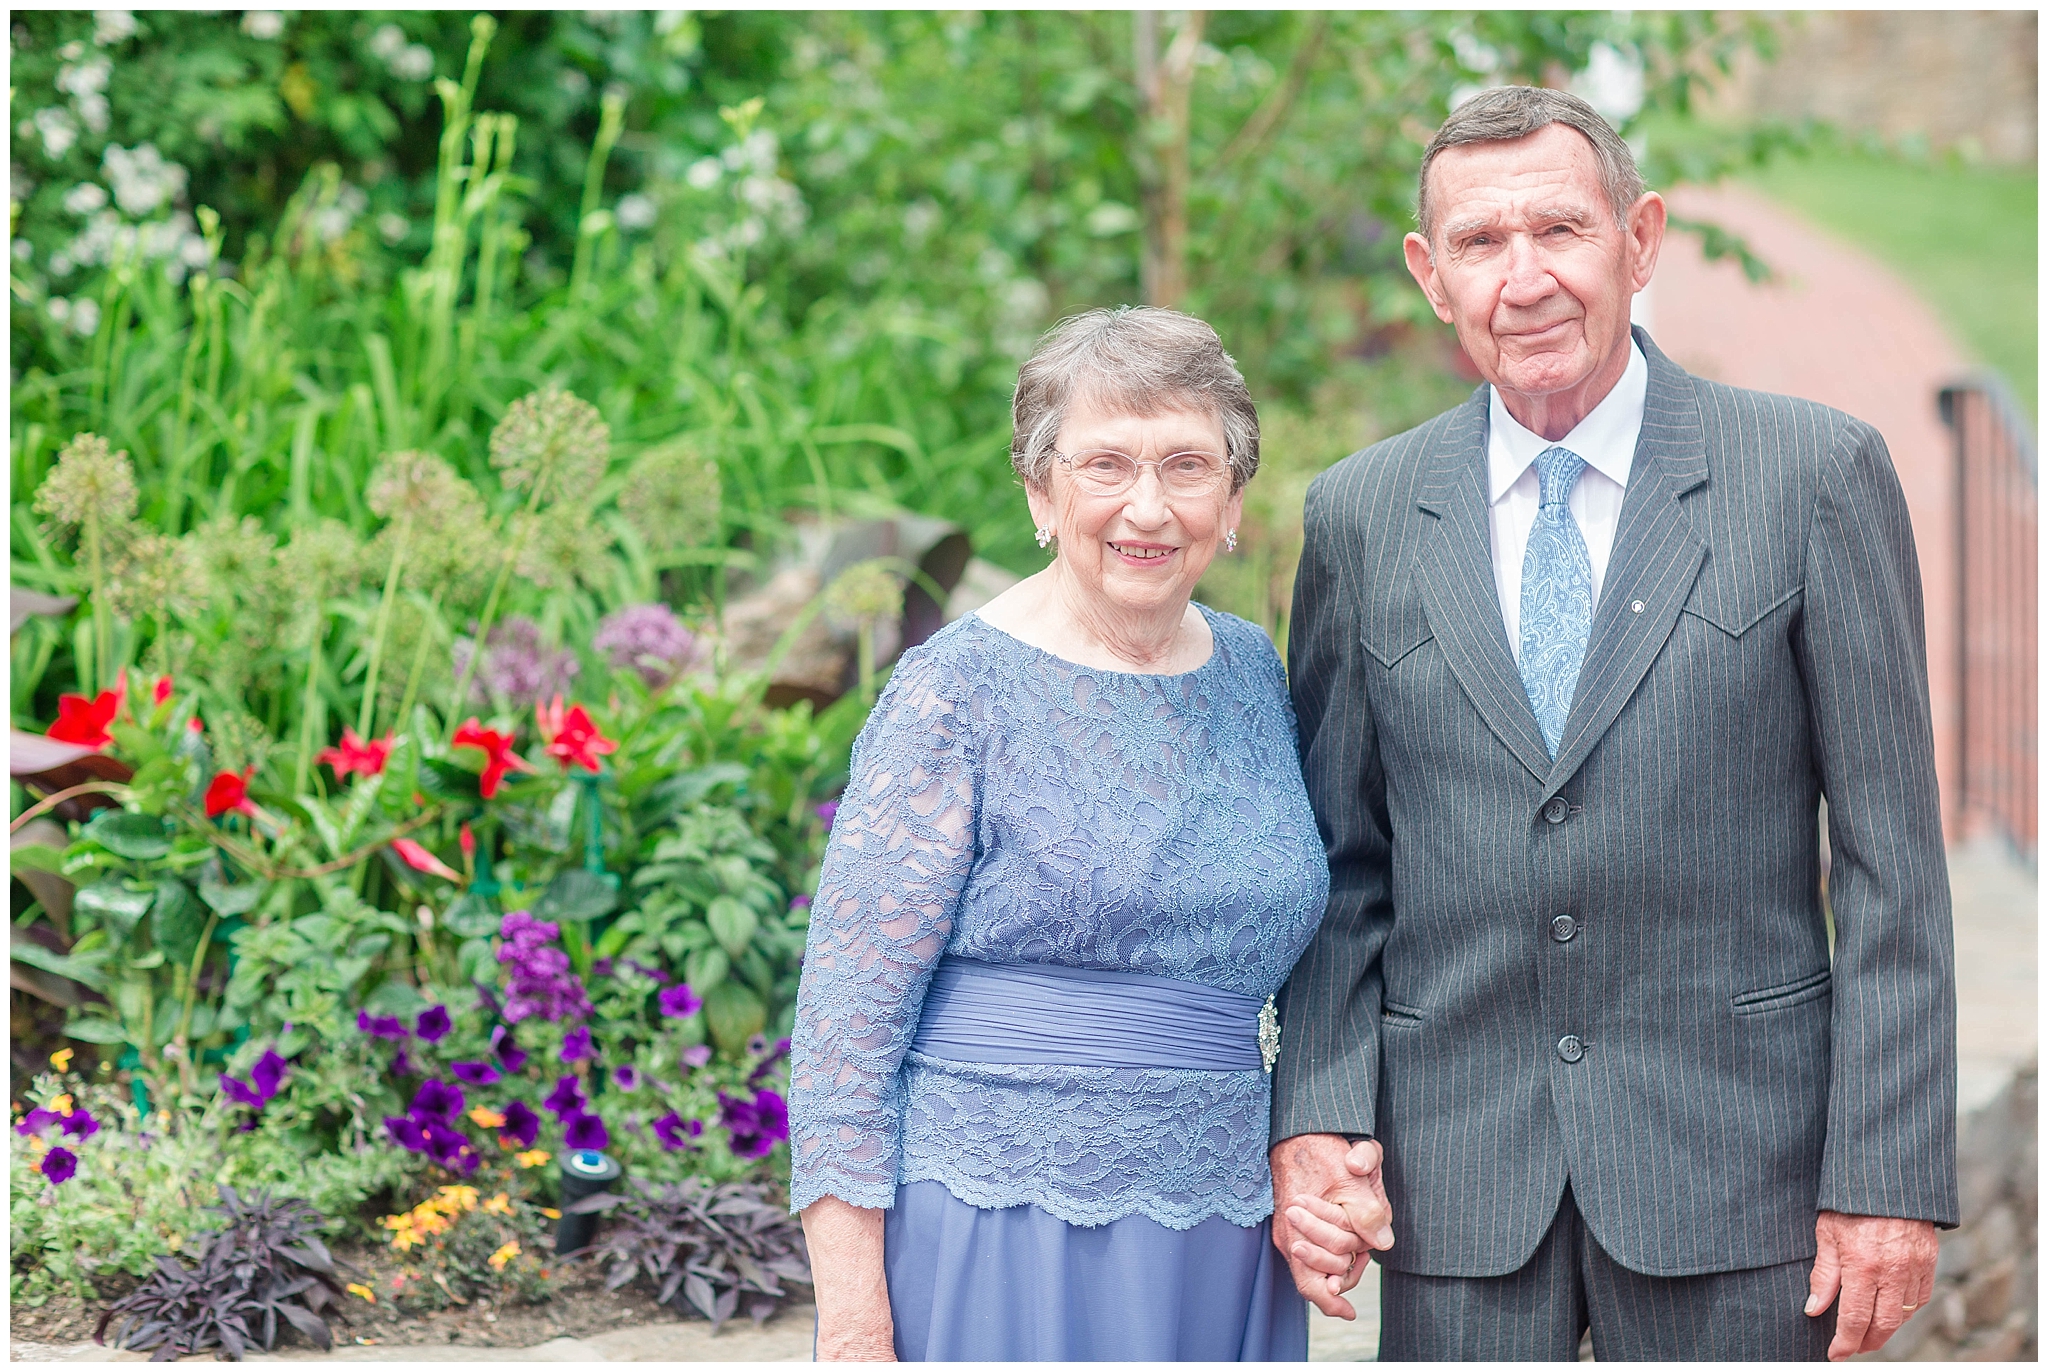 Celebrating 60 Years | My Grandparents Anniversary